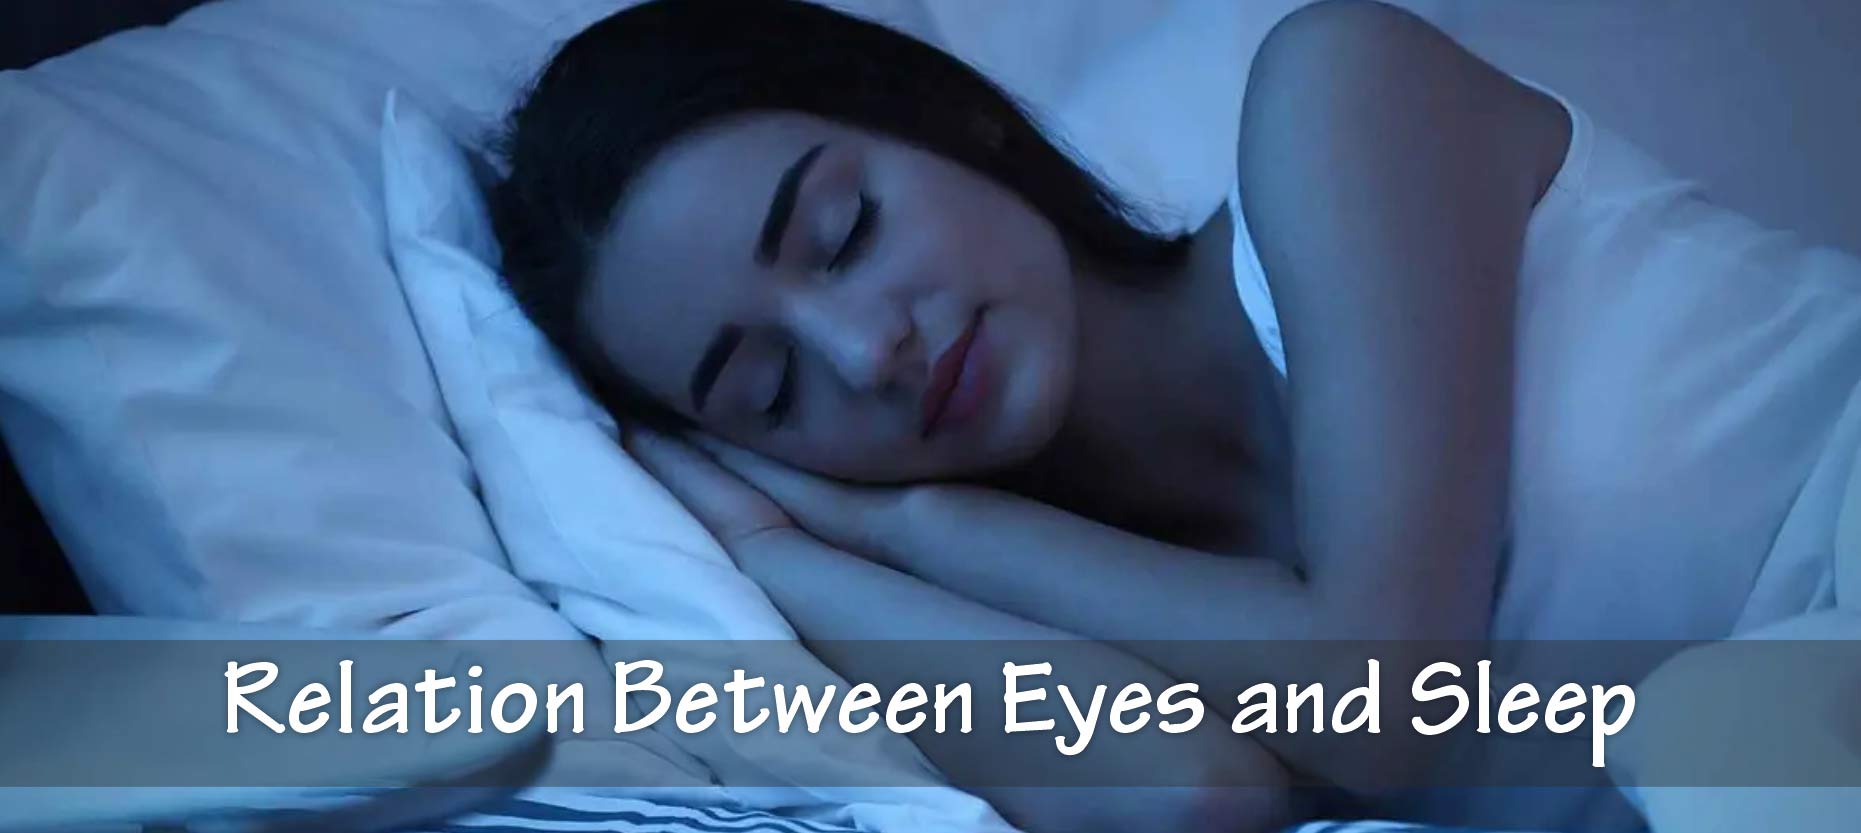 Relation between sleep and eyes